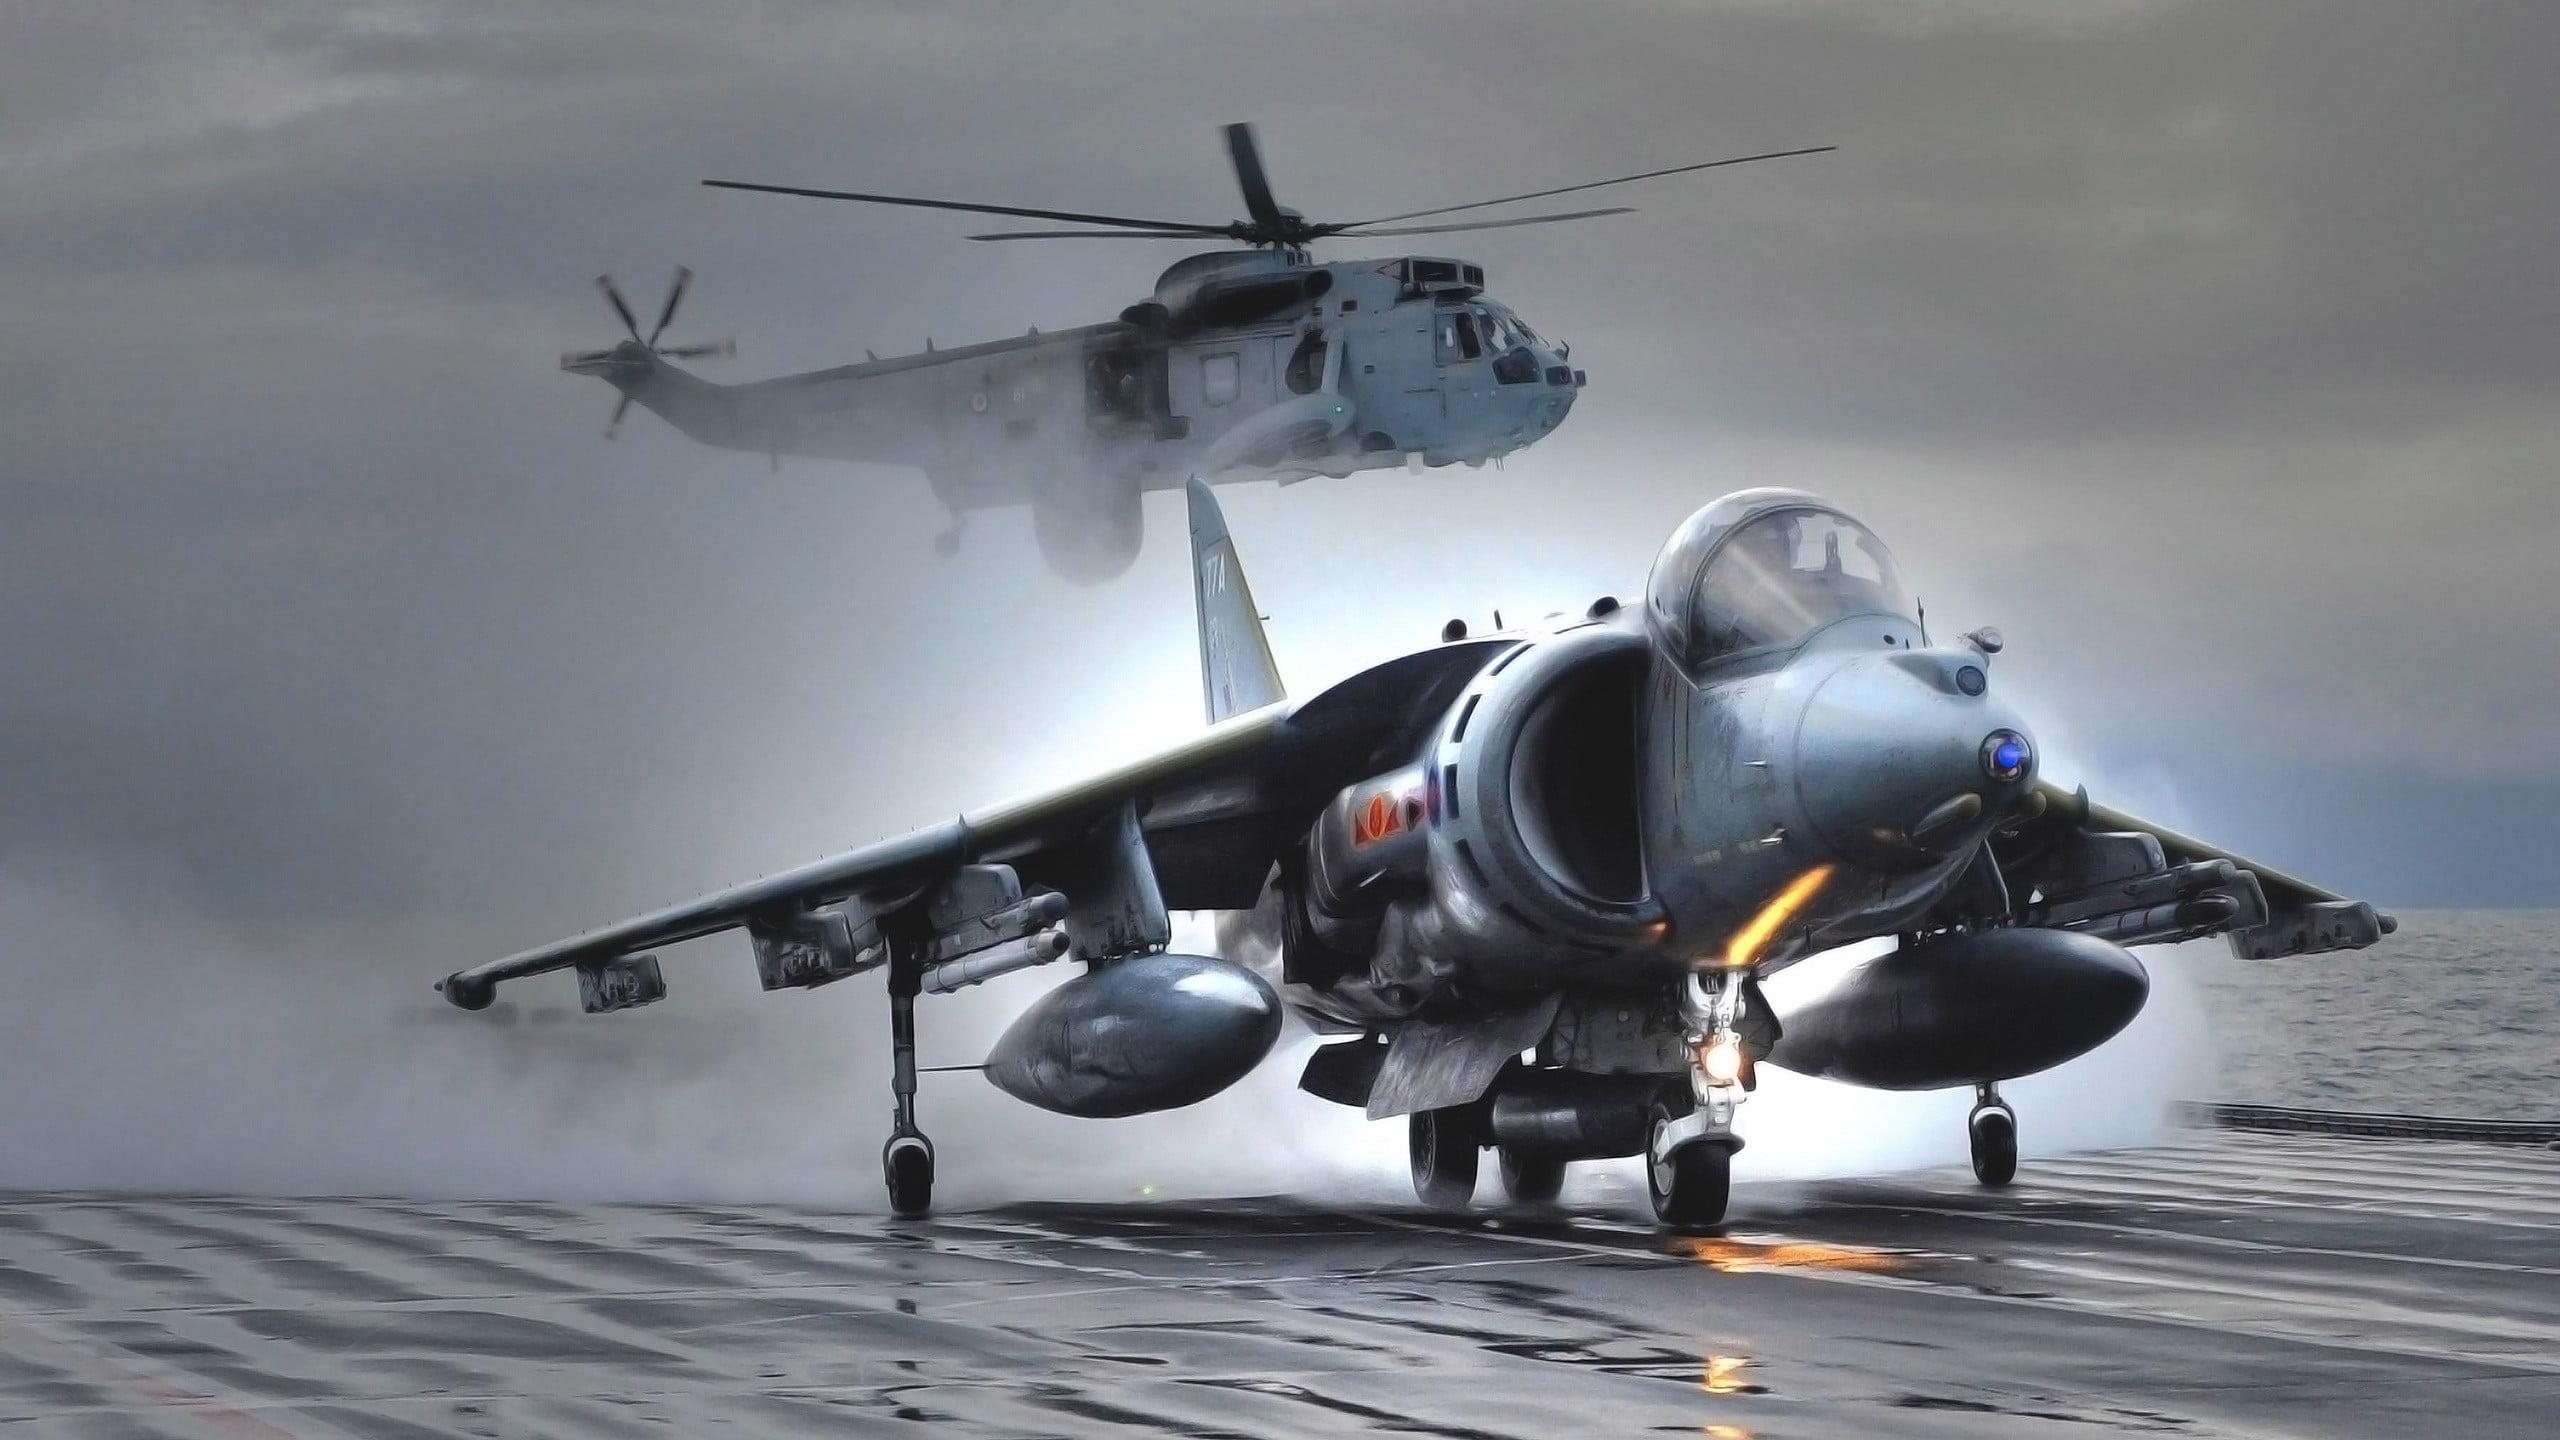 Gray Airplane, Harrier, AV 8B Harrier II, Royal Navy